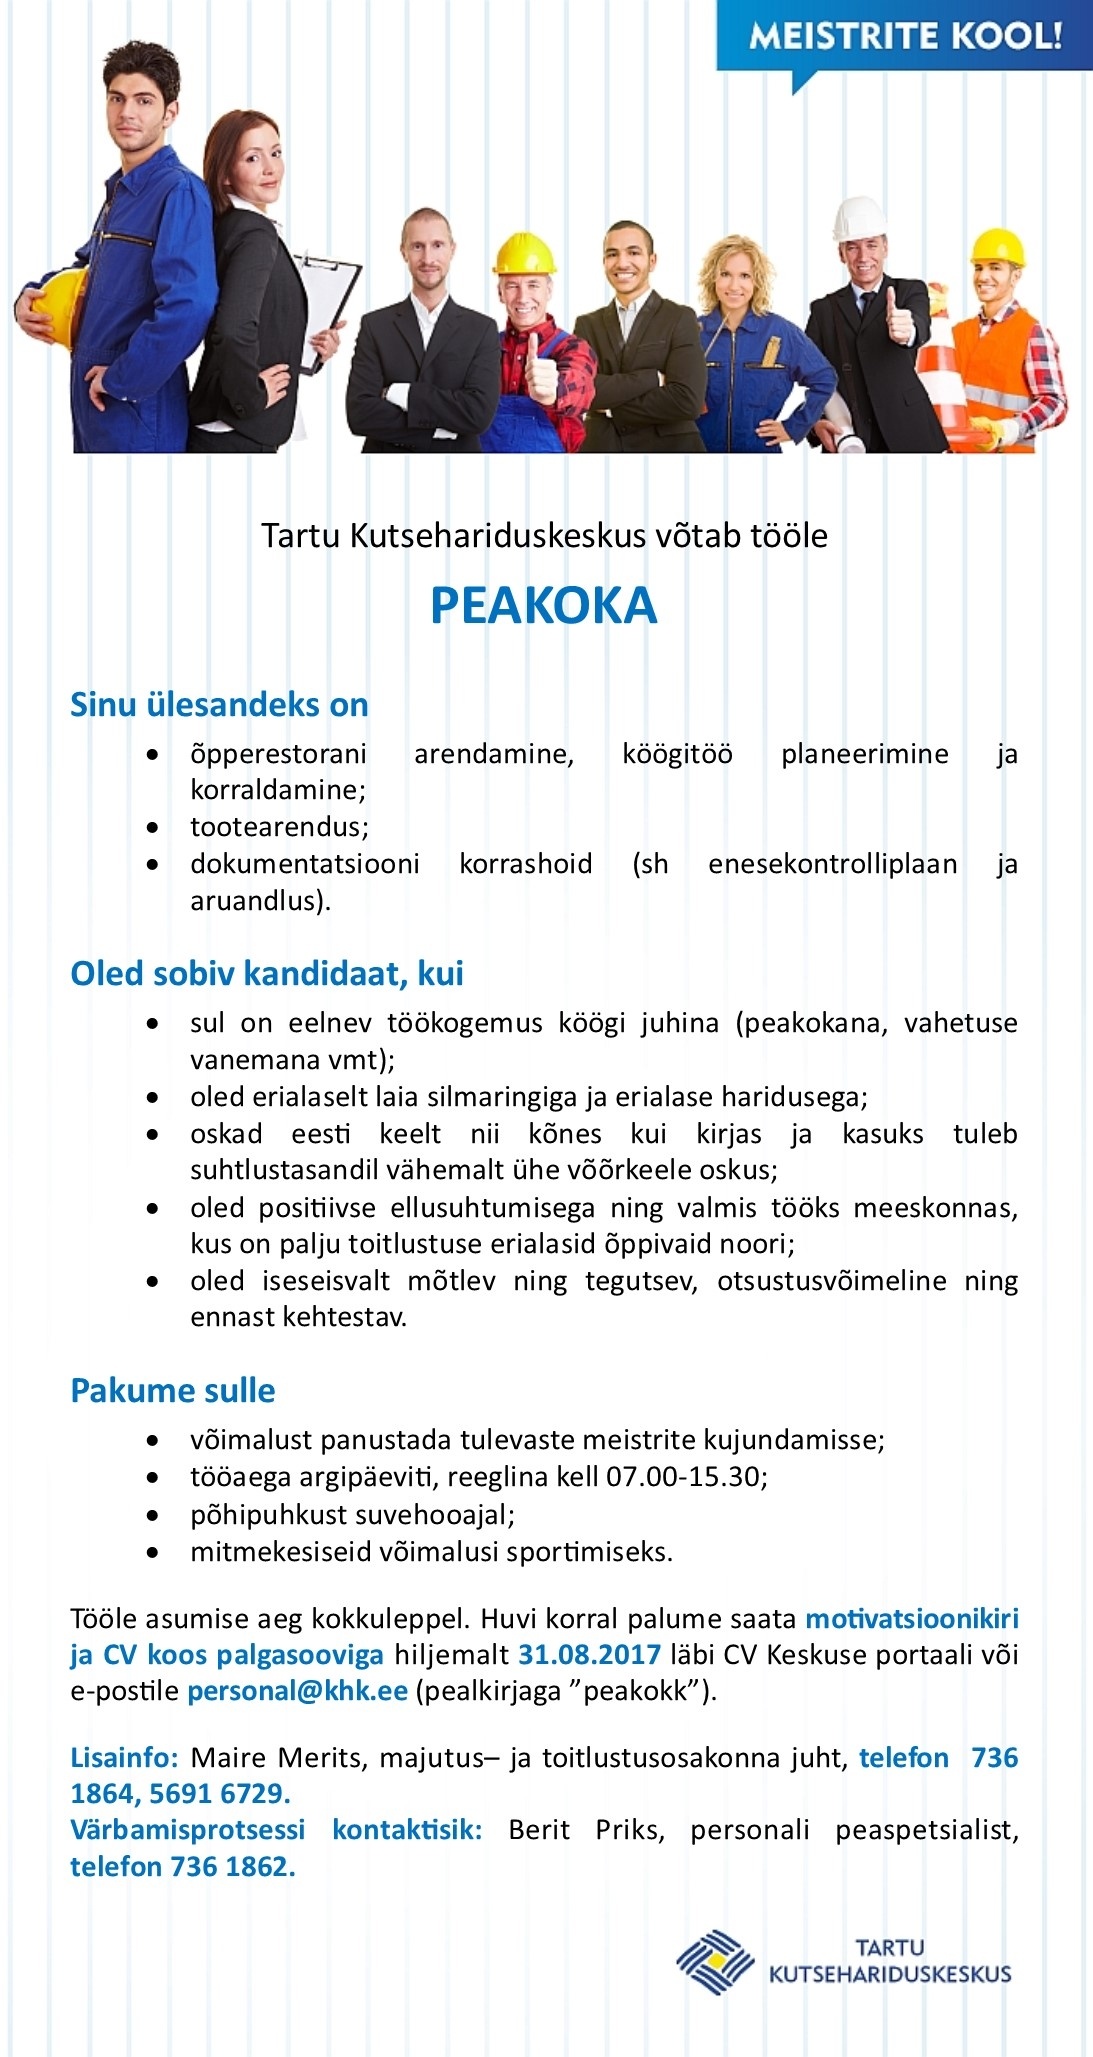 Tartu Kutsehariduskeskus Peakokk